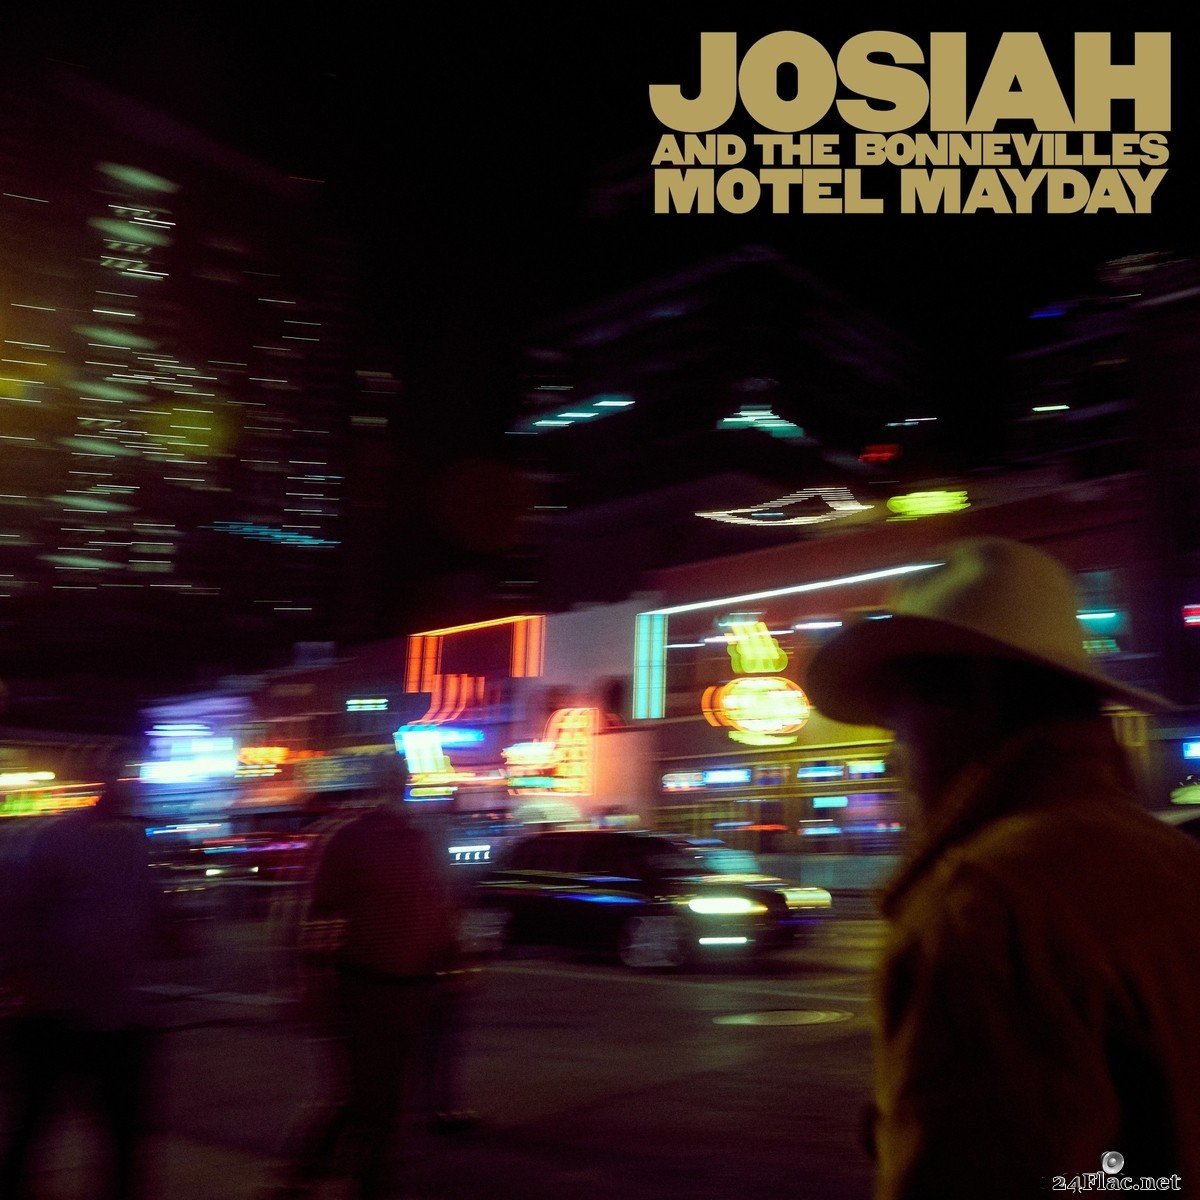 Josiah and the Bonnevilles - Motel Mayday (2021) FLAC